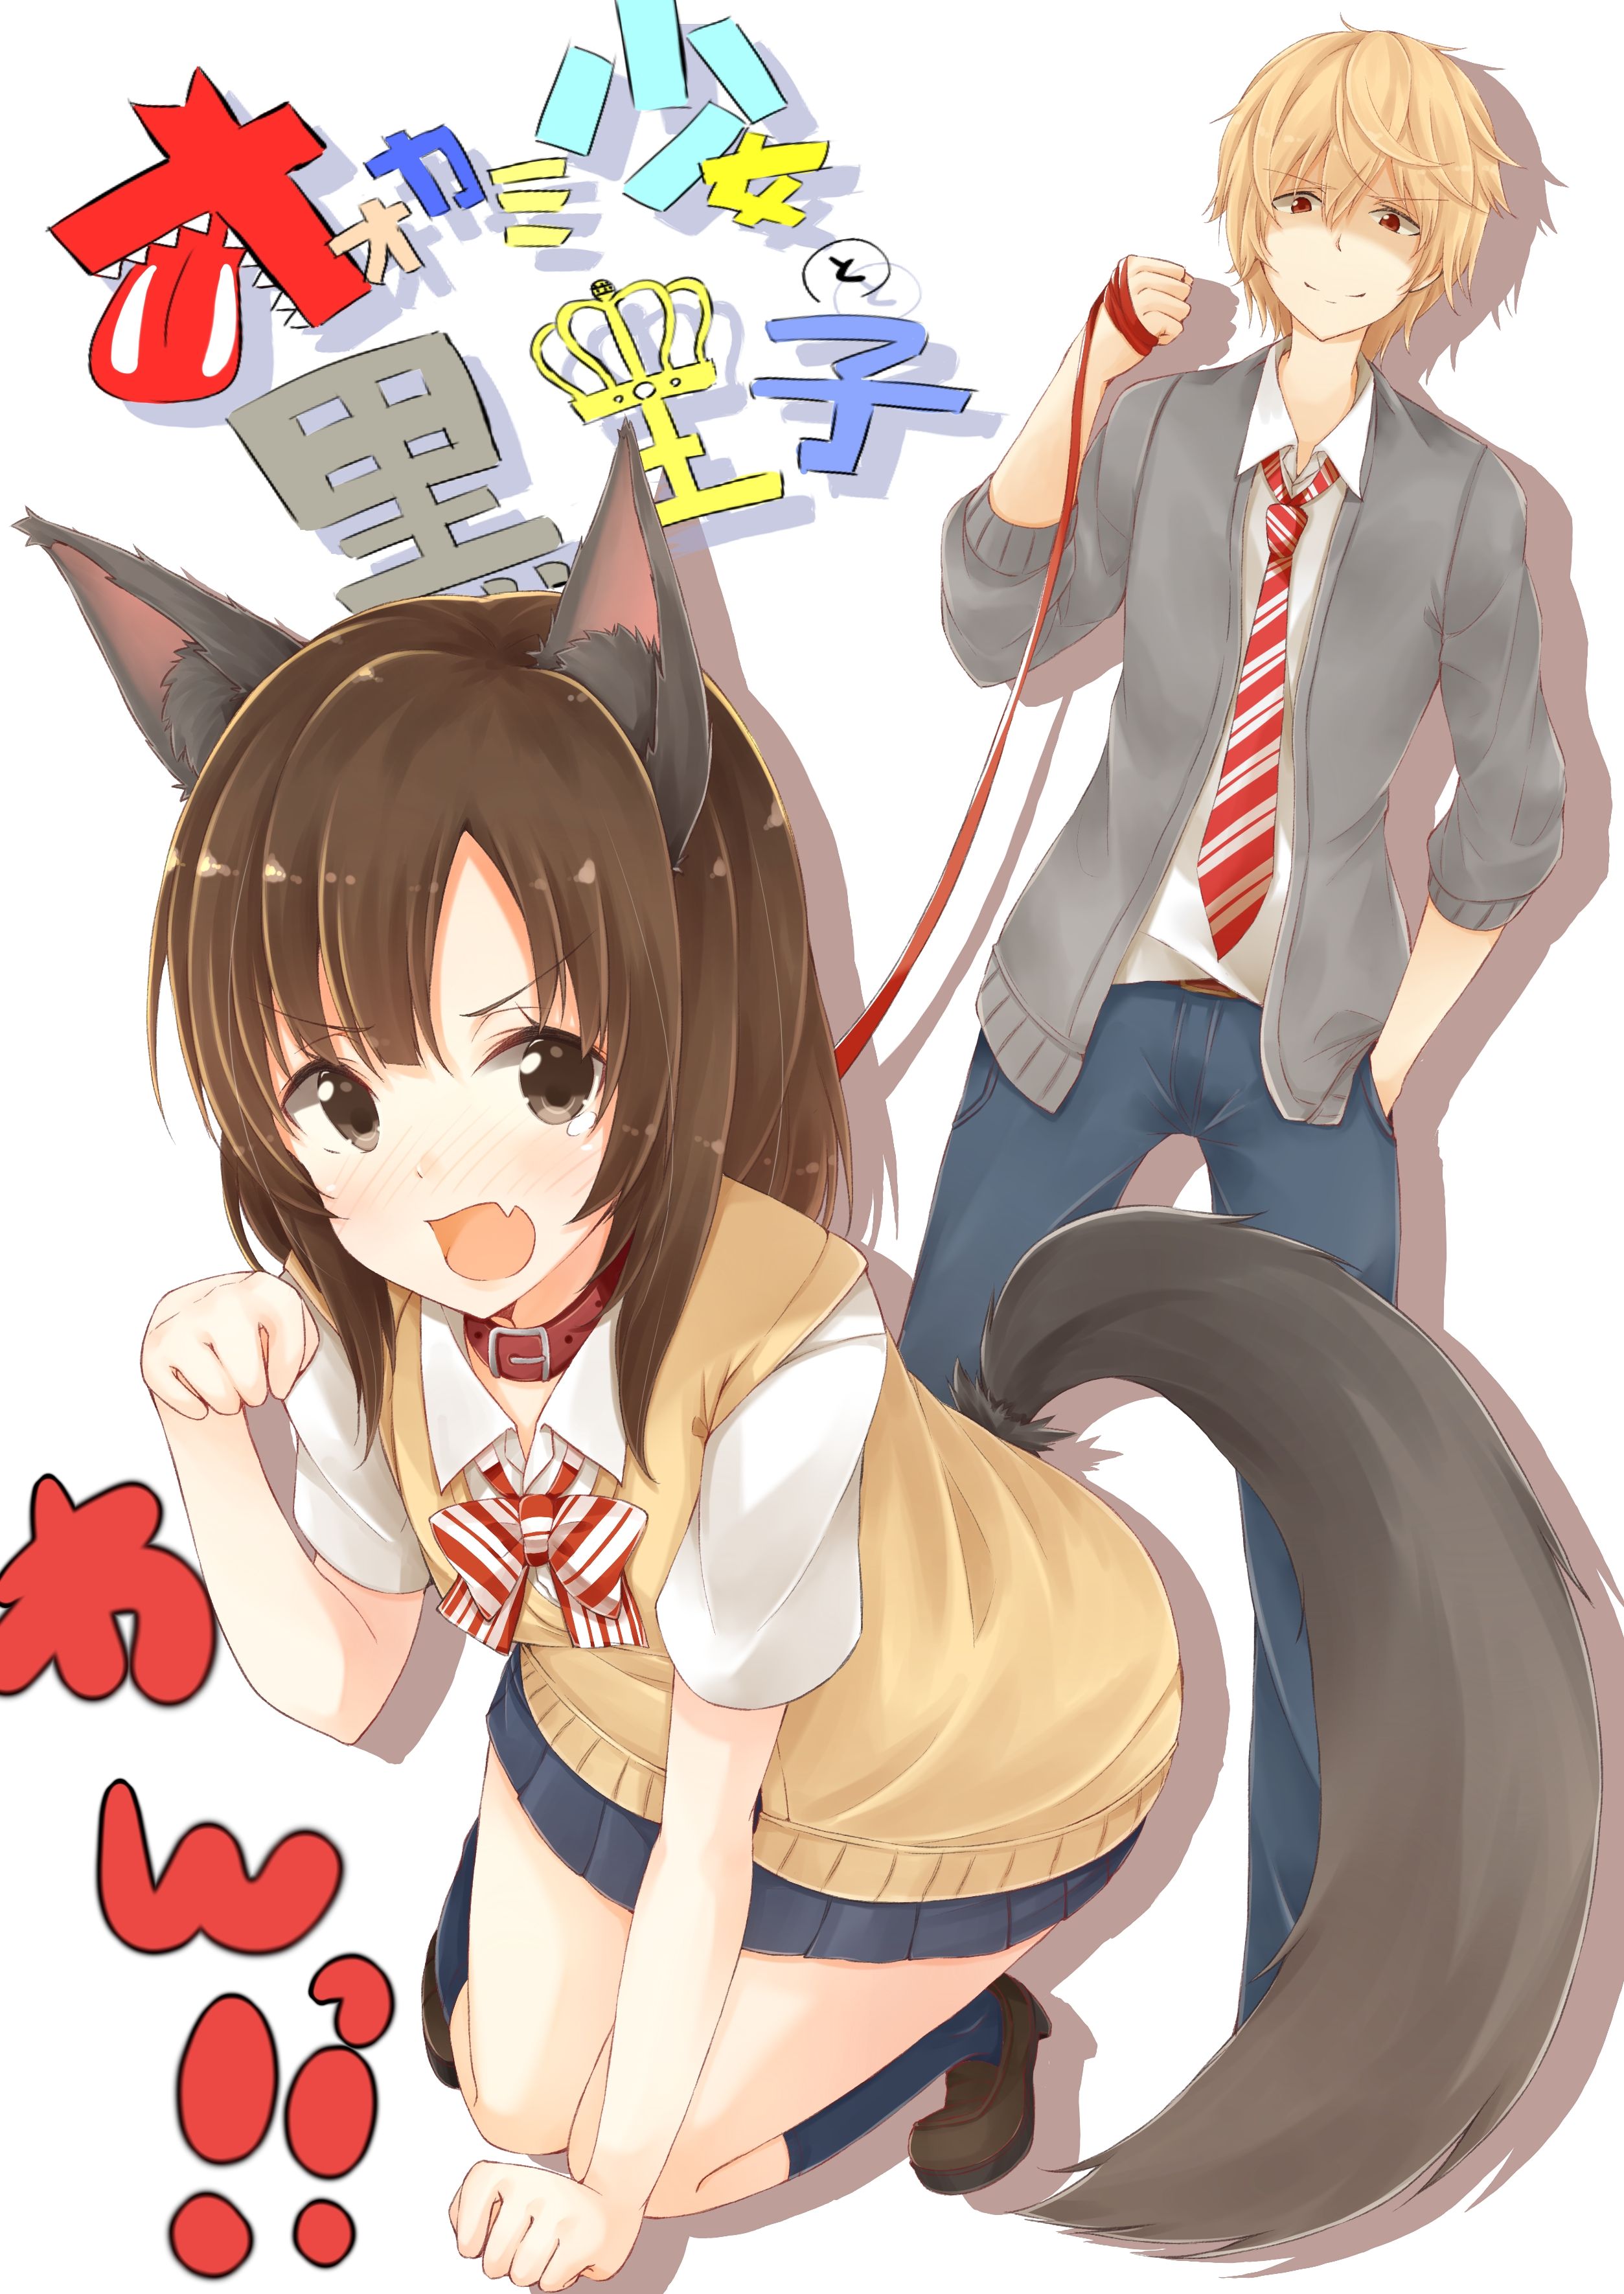 Ookami Shoujo to Kuro Ouji (Wolf Girl & Black Prince) Mobile Wallpaper Anime Image Board